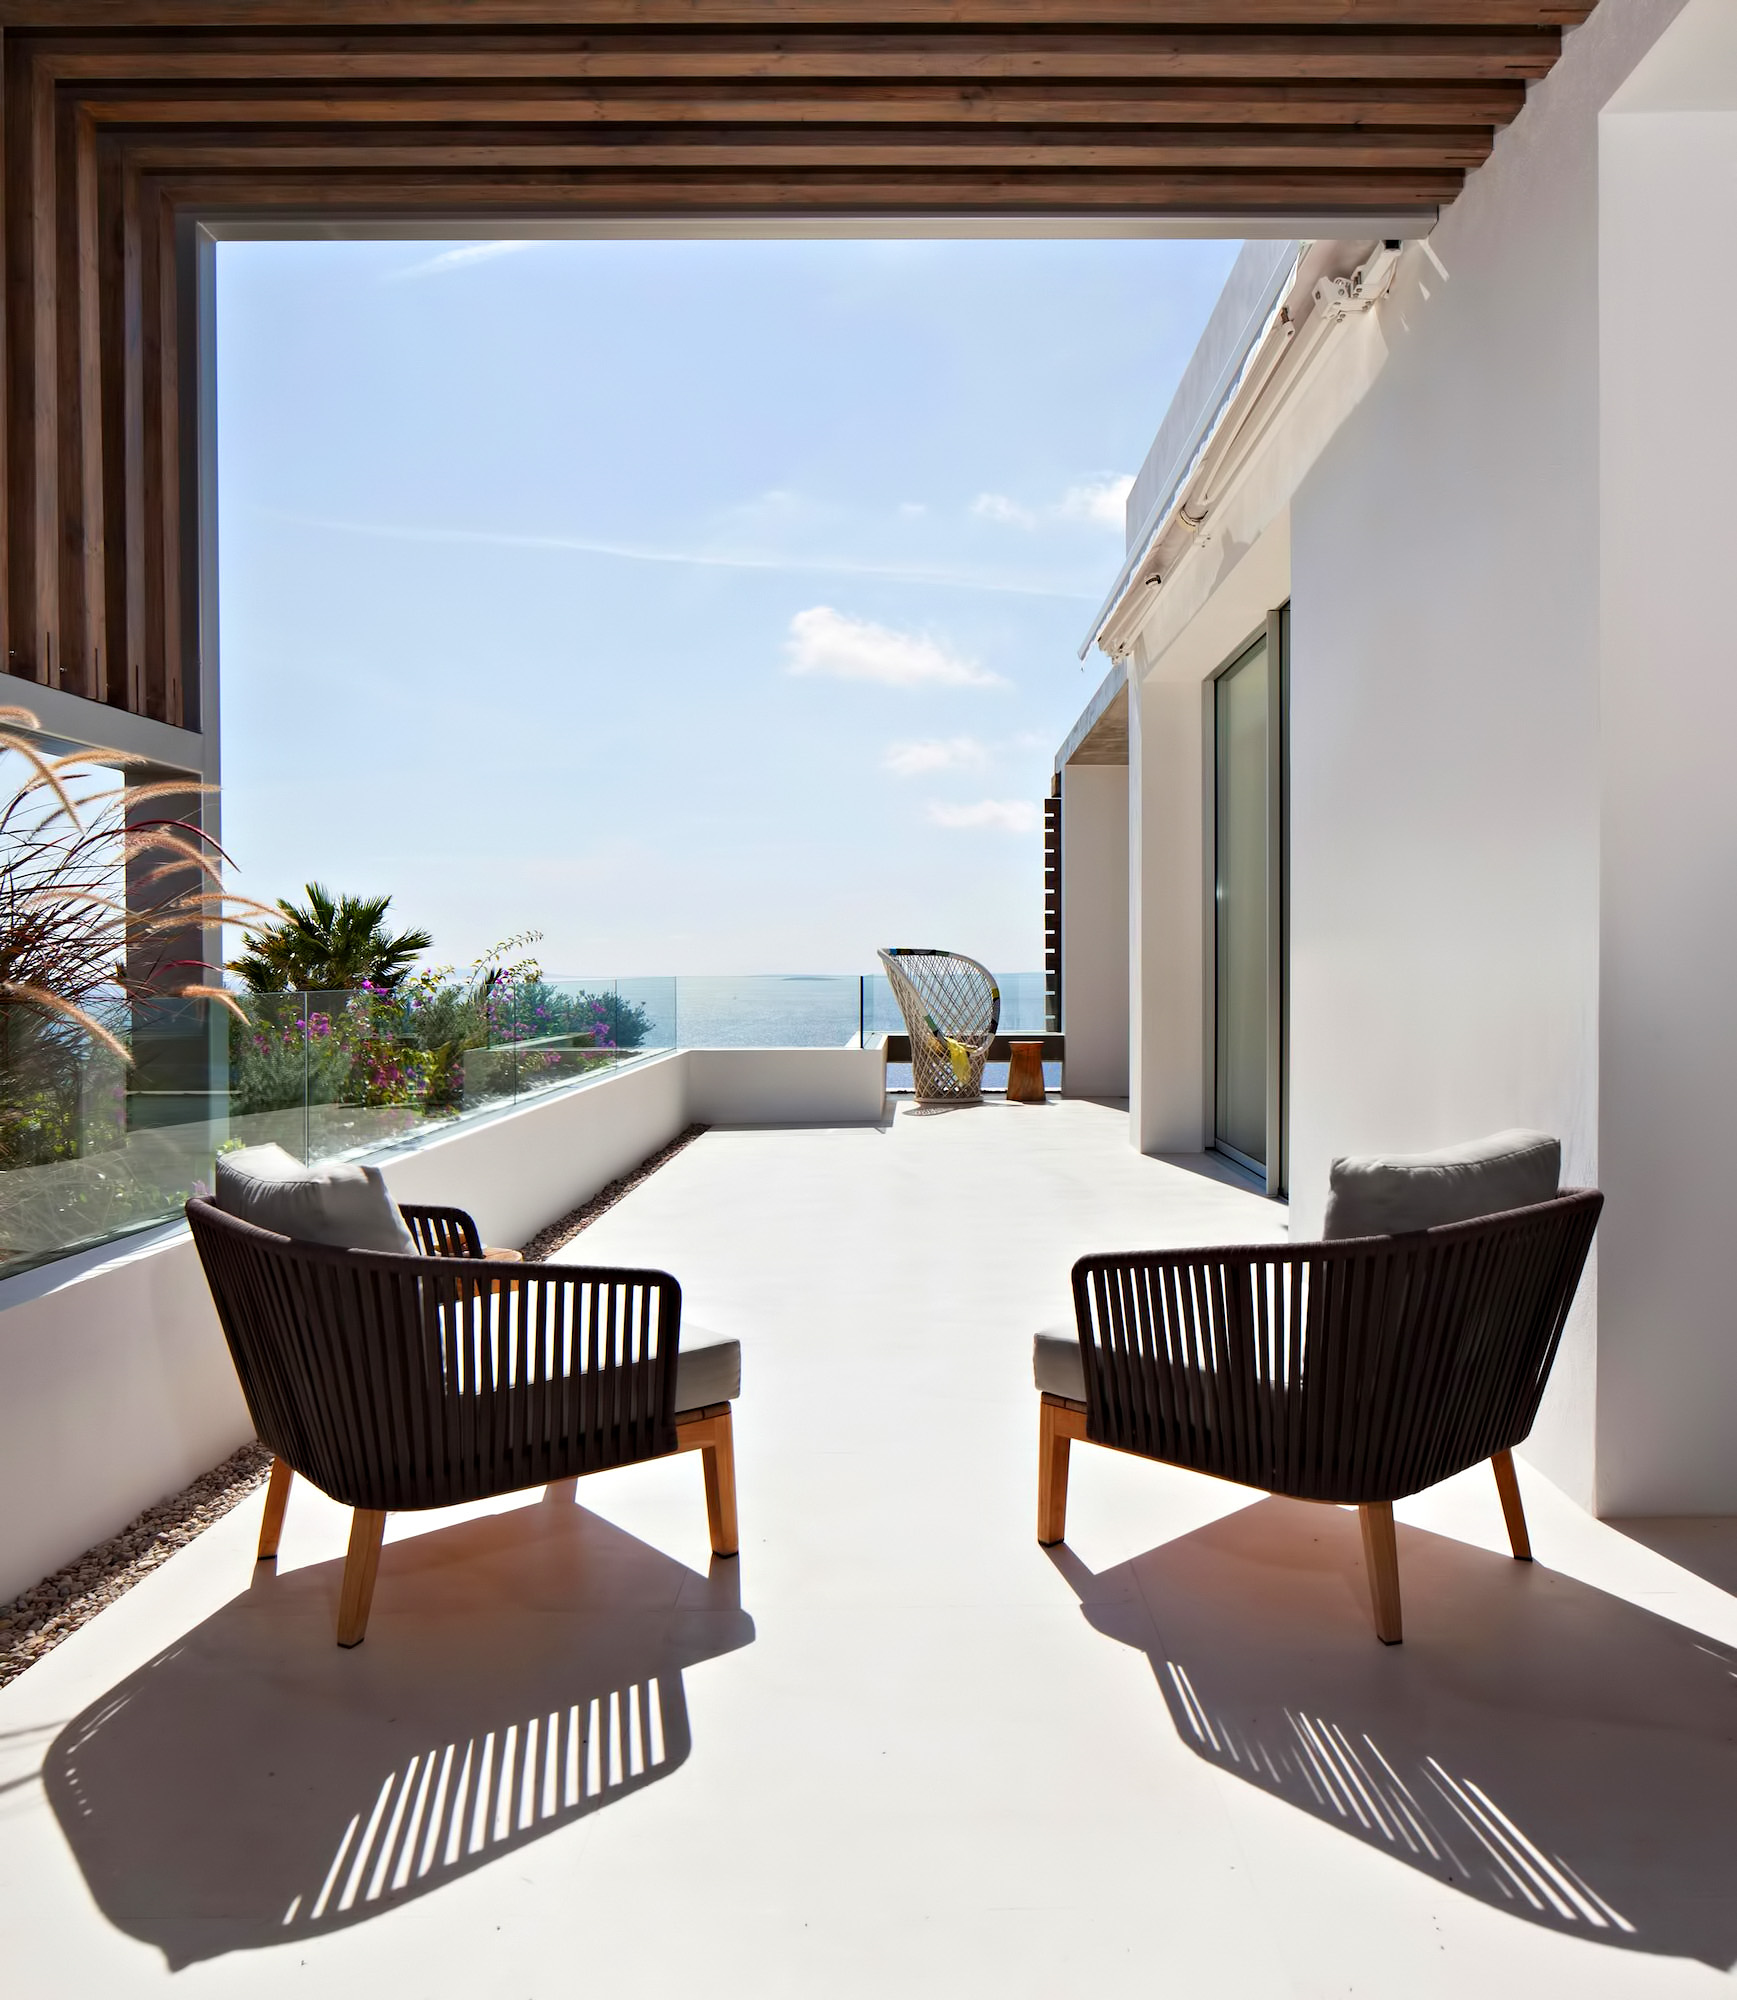 Roca Llisa Luxury Estate – Ibiza, Balearic Islands, Spain